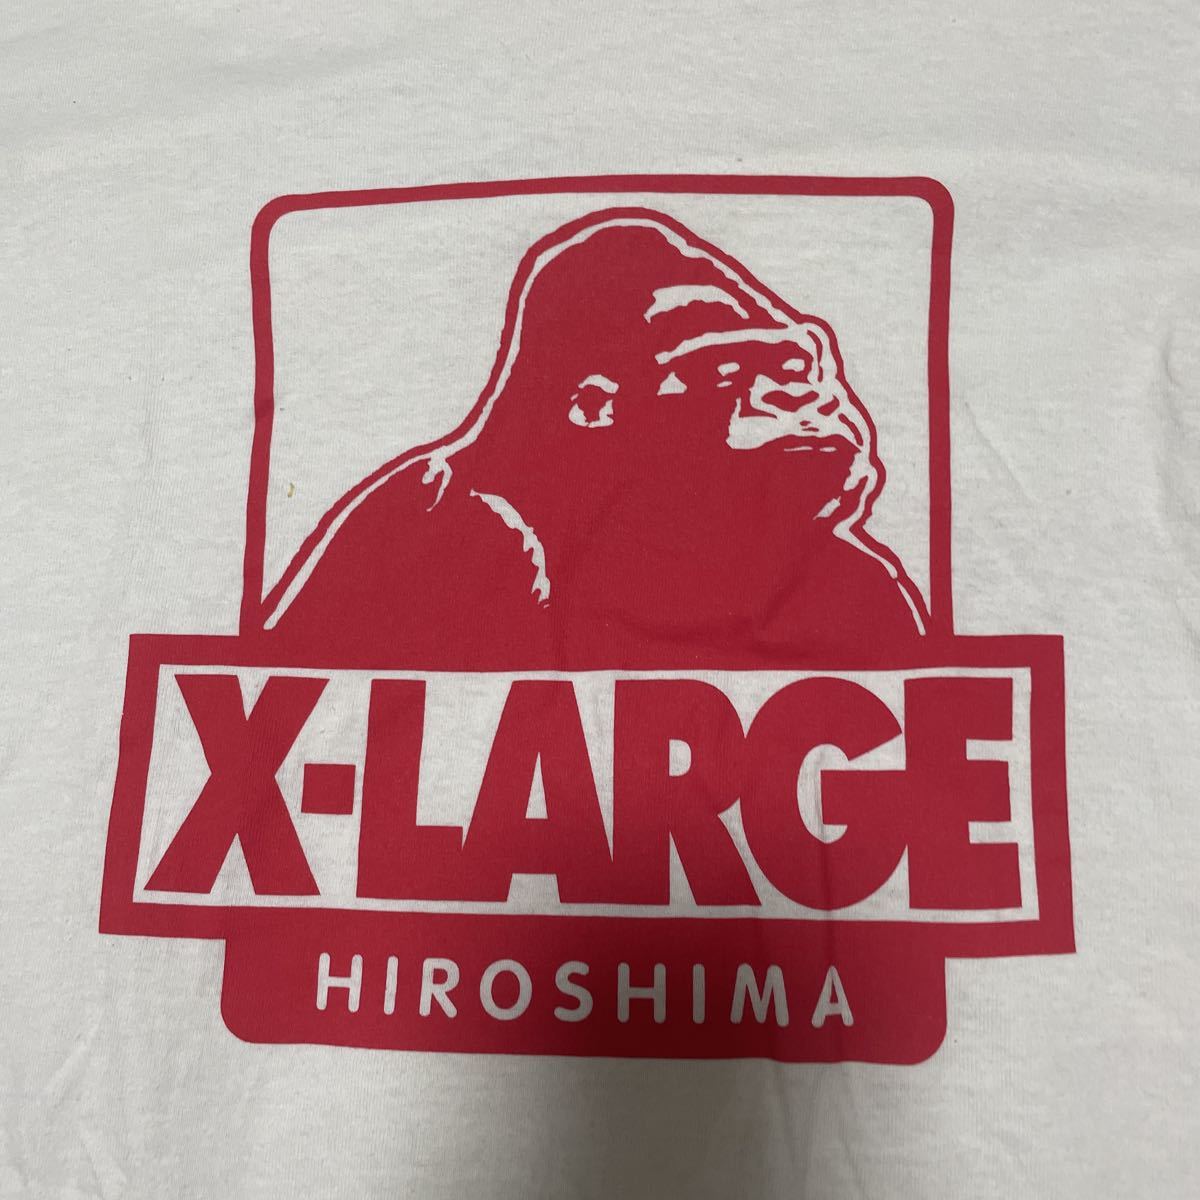 X-LARGE XLarge HIROSHIMA ограничение размер L неиспользуемый товар 